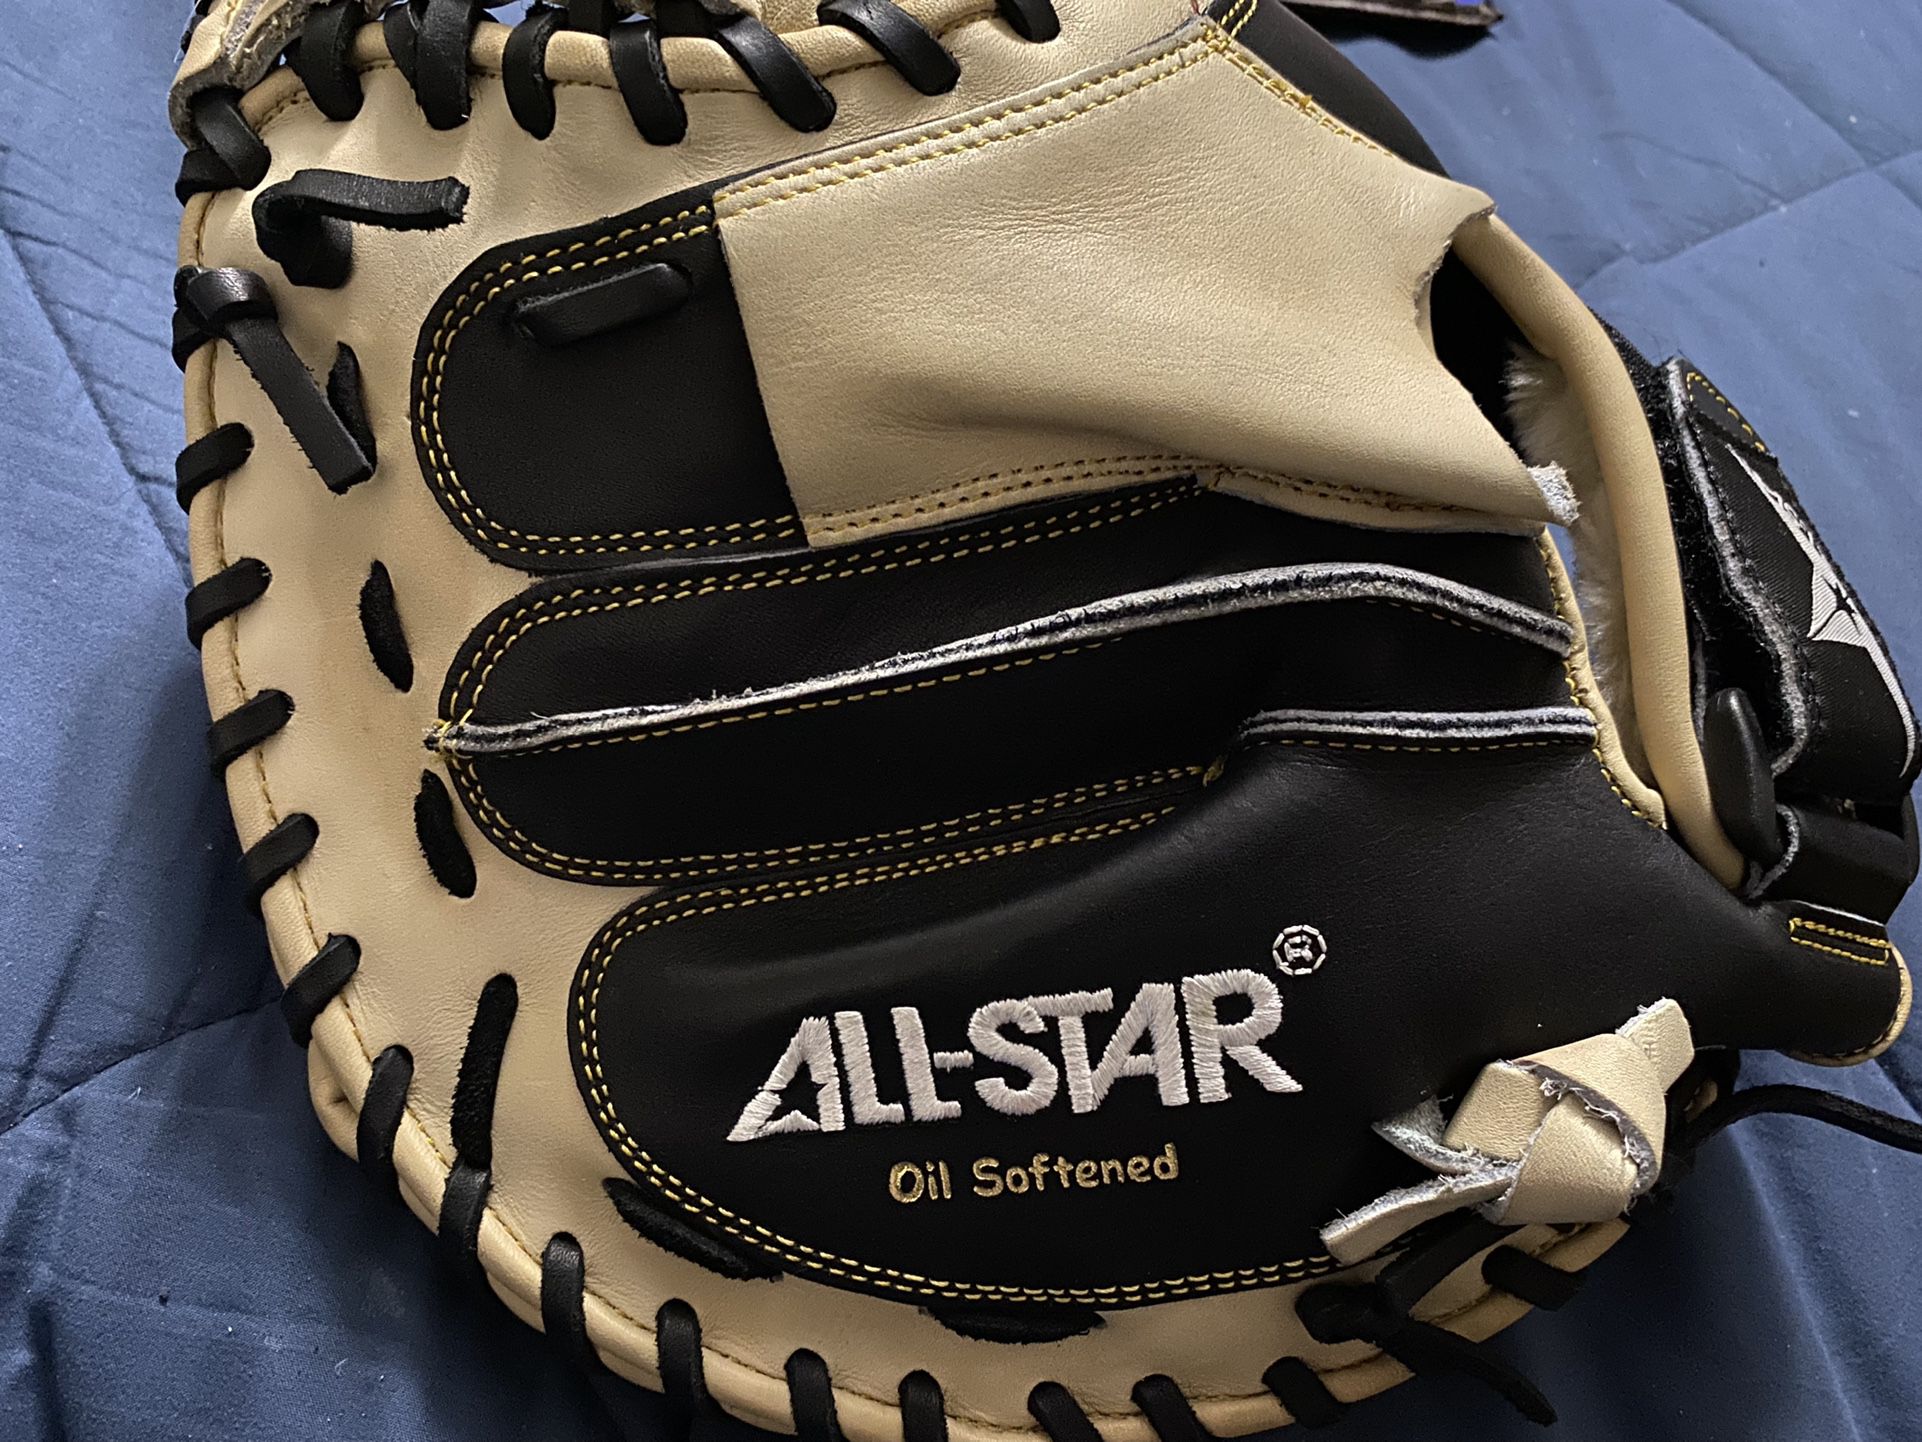 All-Star Professional Series Baseball Catcher’s Mitt